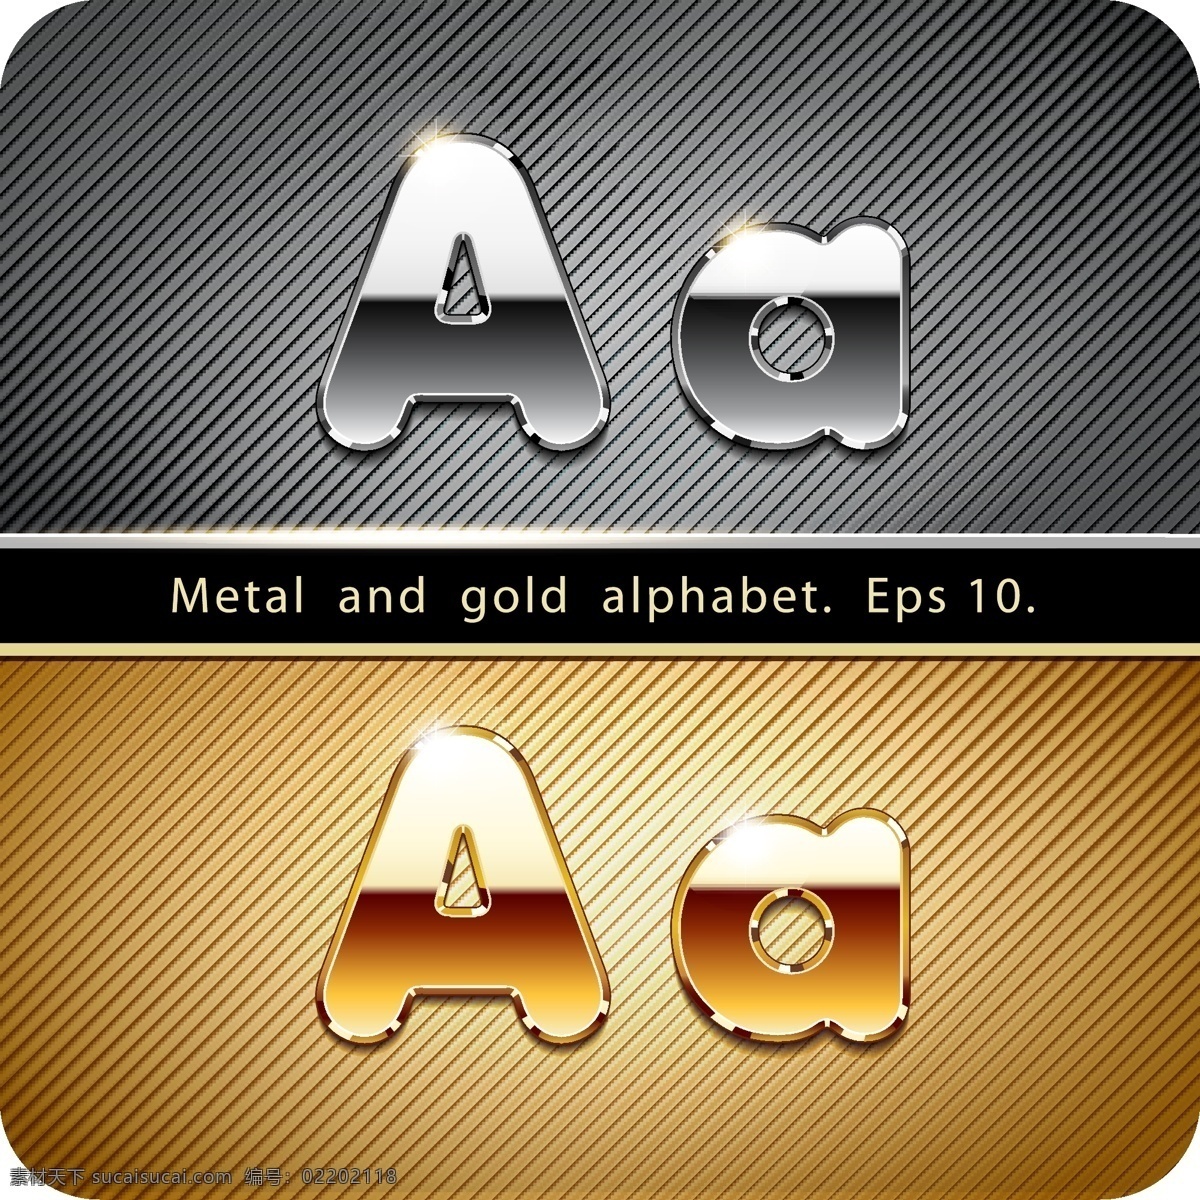 金属字母背景 金色 银色 金属 英语字母 艺术字体 书画文字 文化艺术 矢量素材 黑色